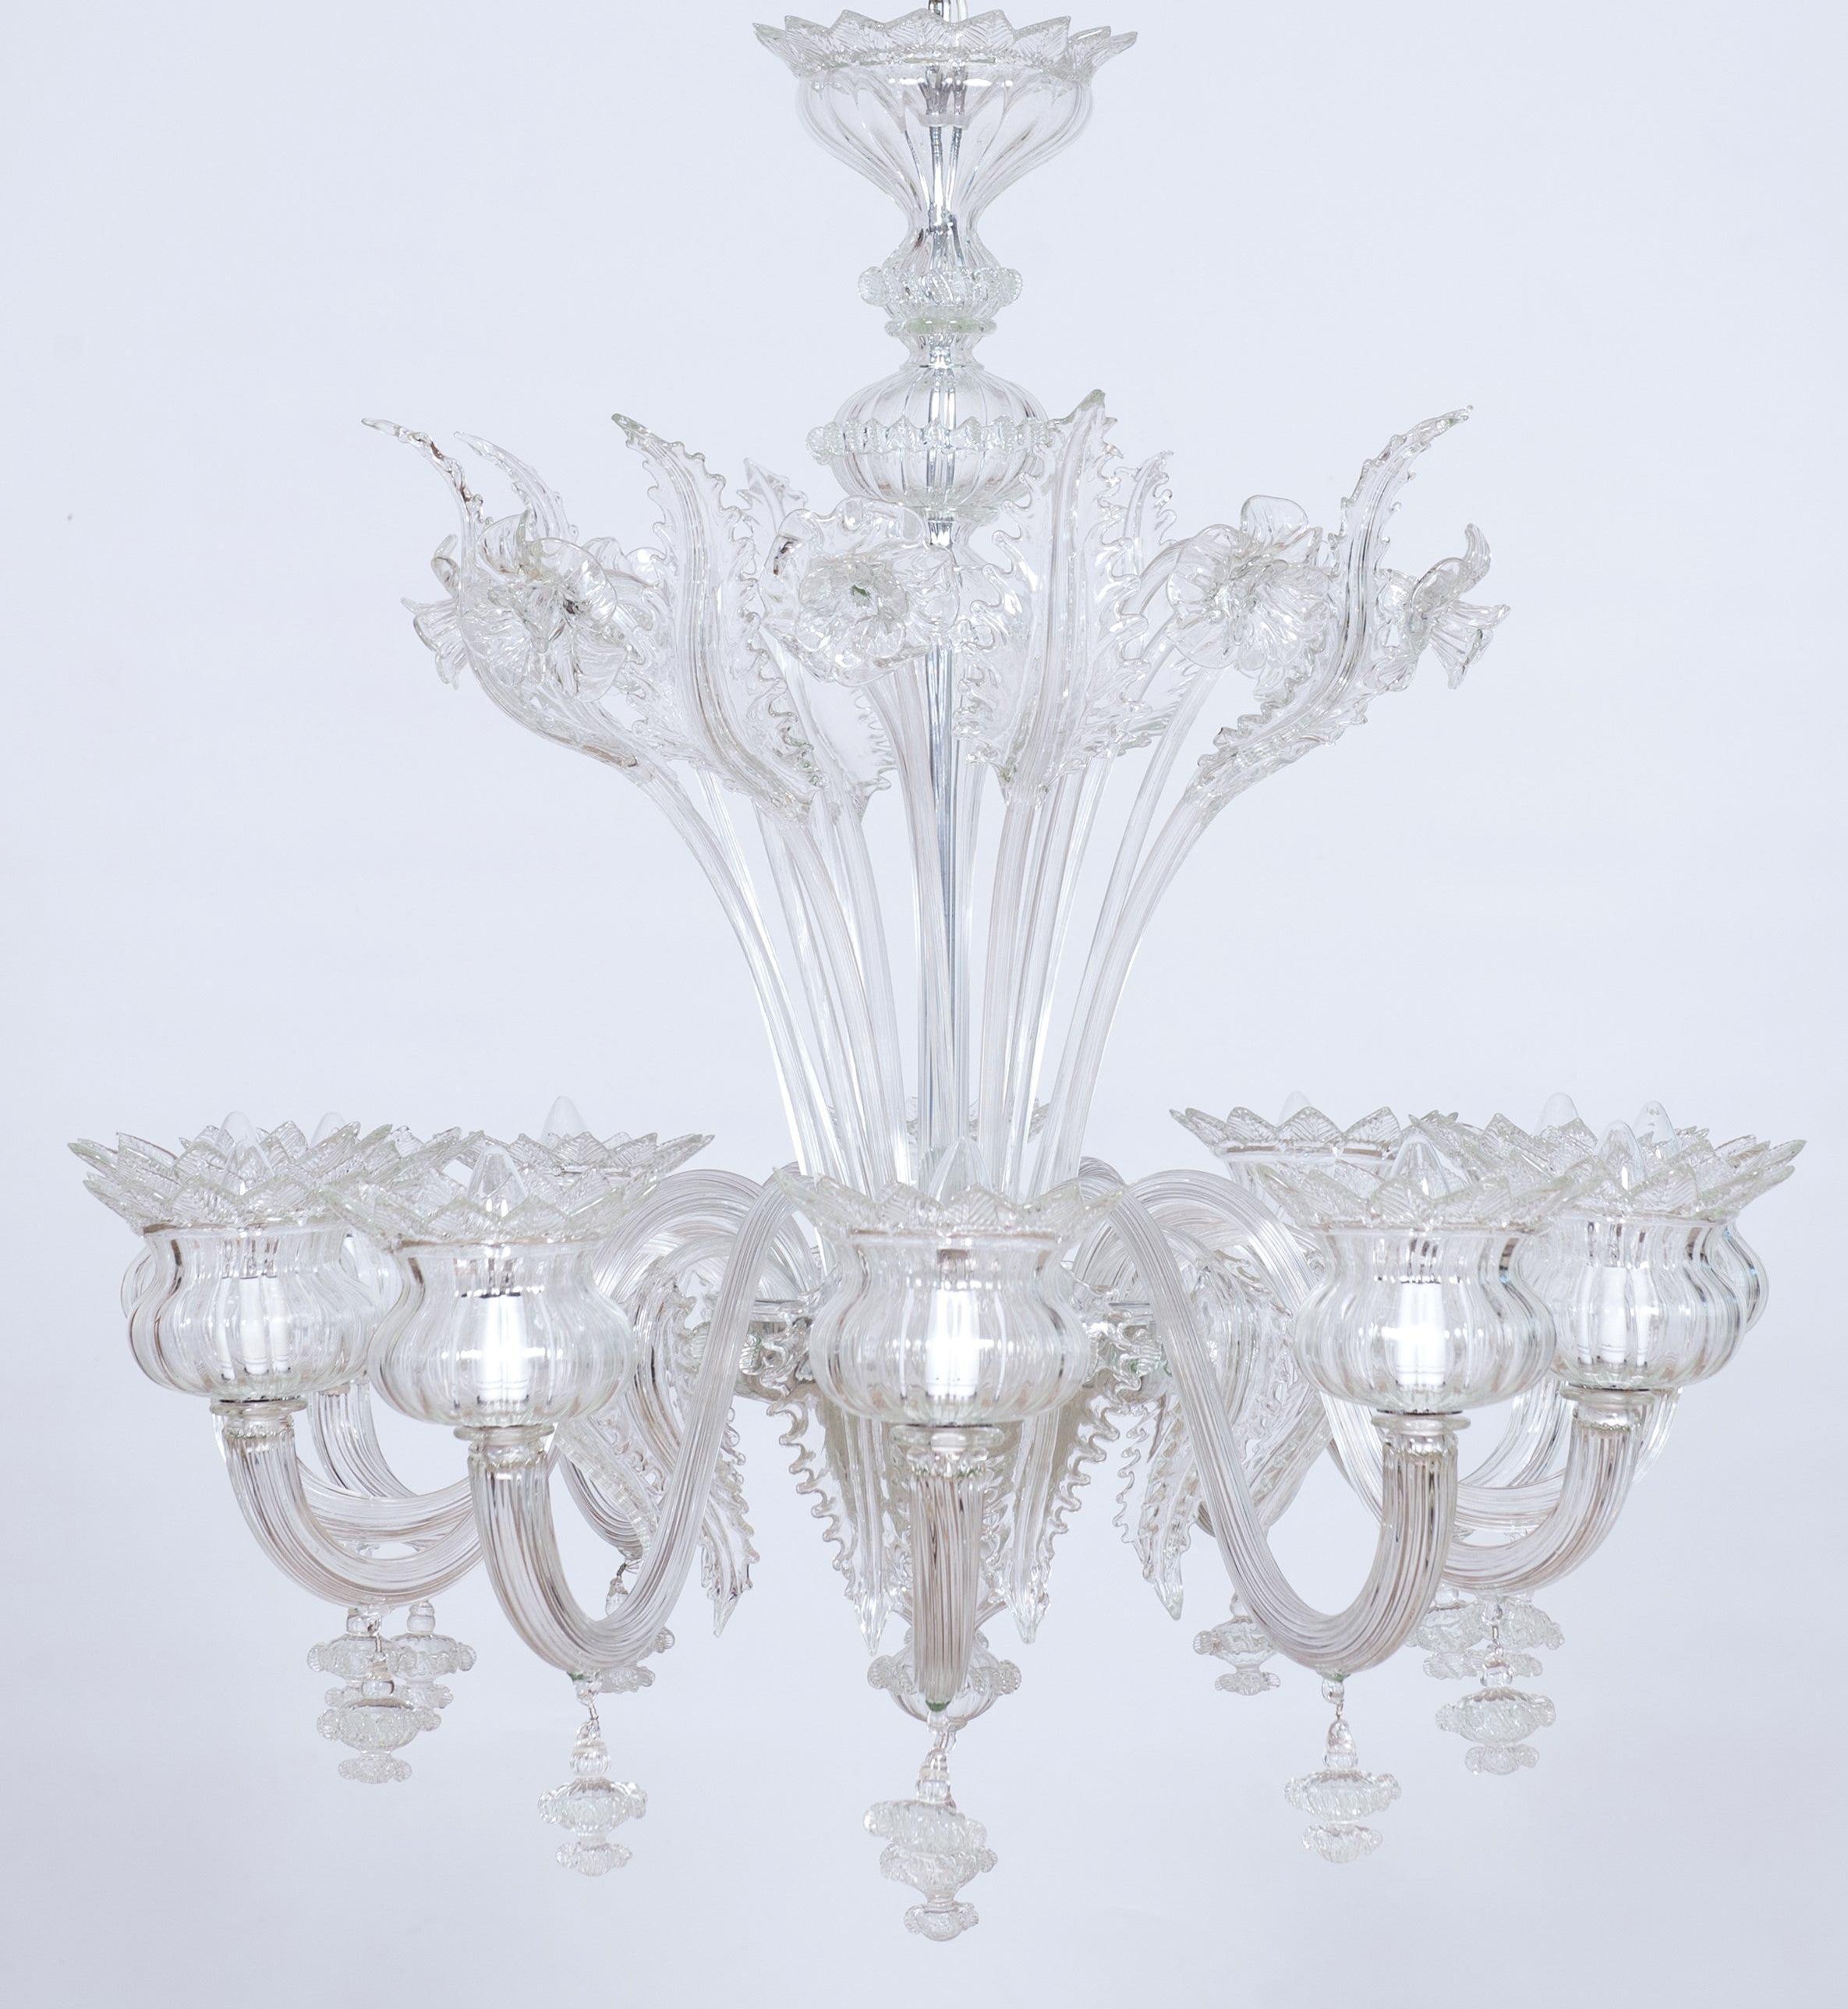 Transparenter, klarer Gänseblümchen-Kronleuchter aus Muranoglas mit 12 Lichtern, 21. Jahrhundert, Italien.
Der Reichtum und die Perfektion der floralen Details, die diesen Kronleuchter schmücken, sind das Ergebnis der besten Glasbläsertradition von